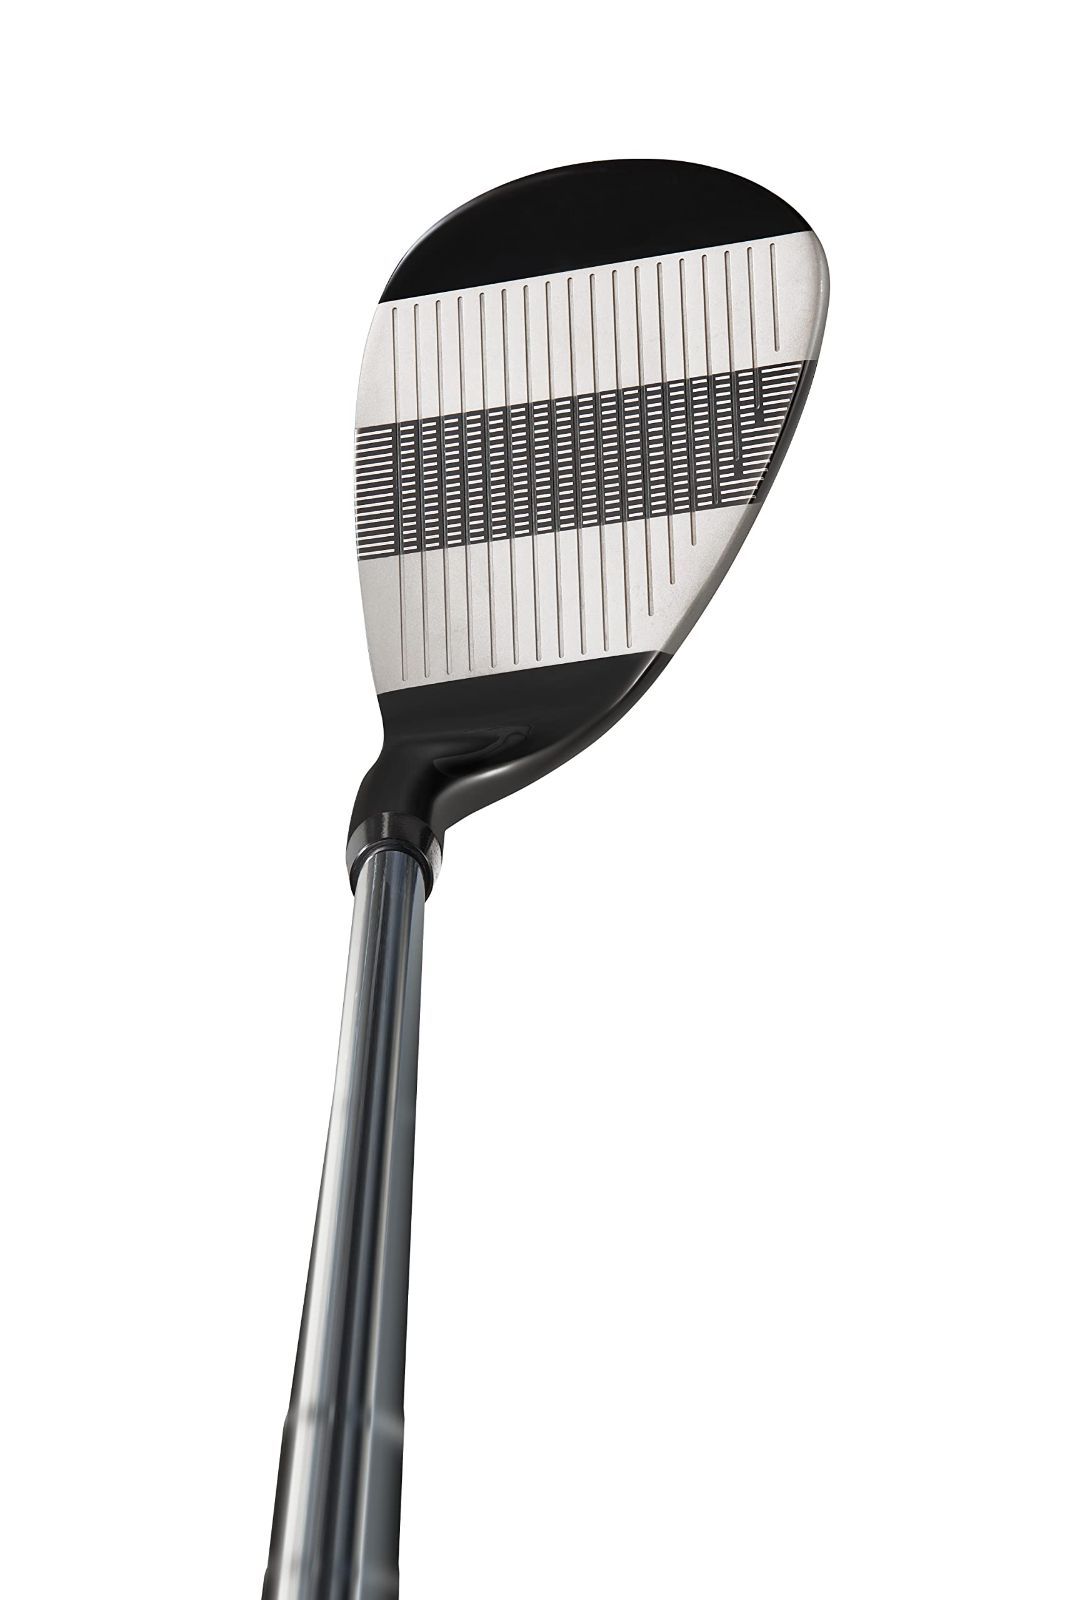 MAZEL マゼル ゴルフサンドウェッジ メンズ 右利き ロフト角:48度、50度、52度、54度、55度、56度、58度、59度、60度、70度  フレックス S ワイドソールウェッジ KK-Select メルカリ